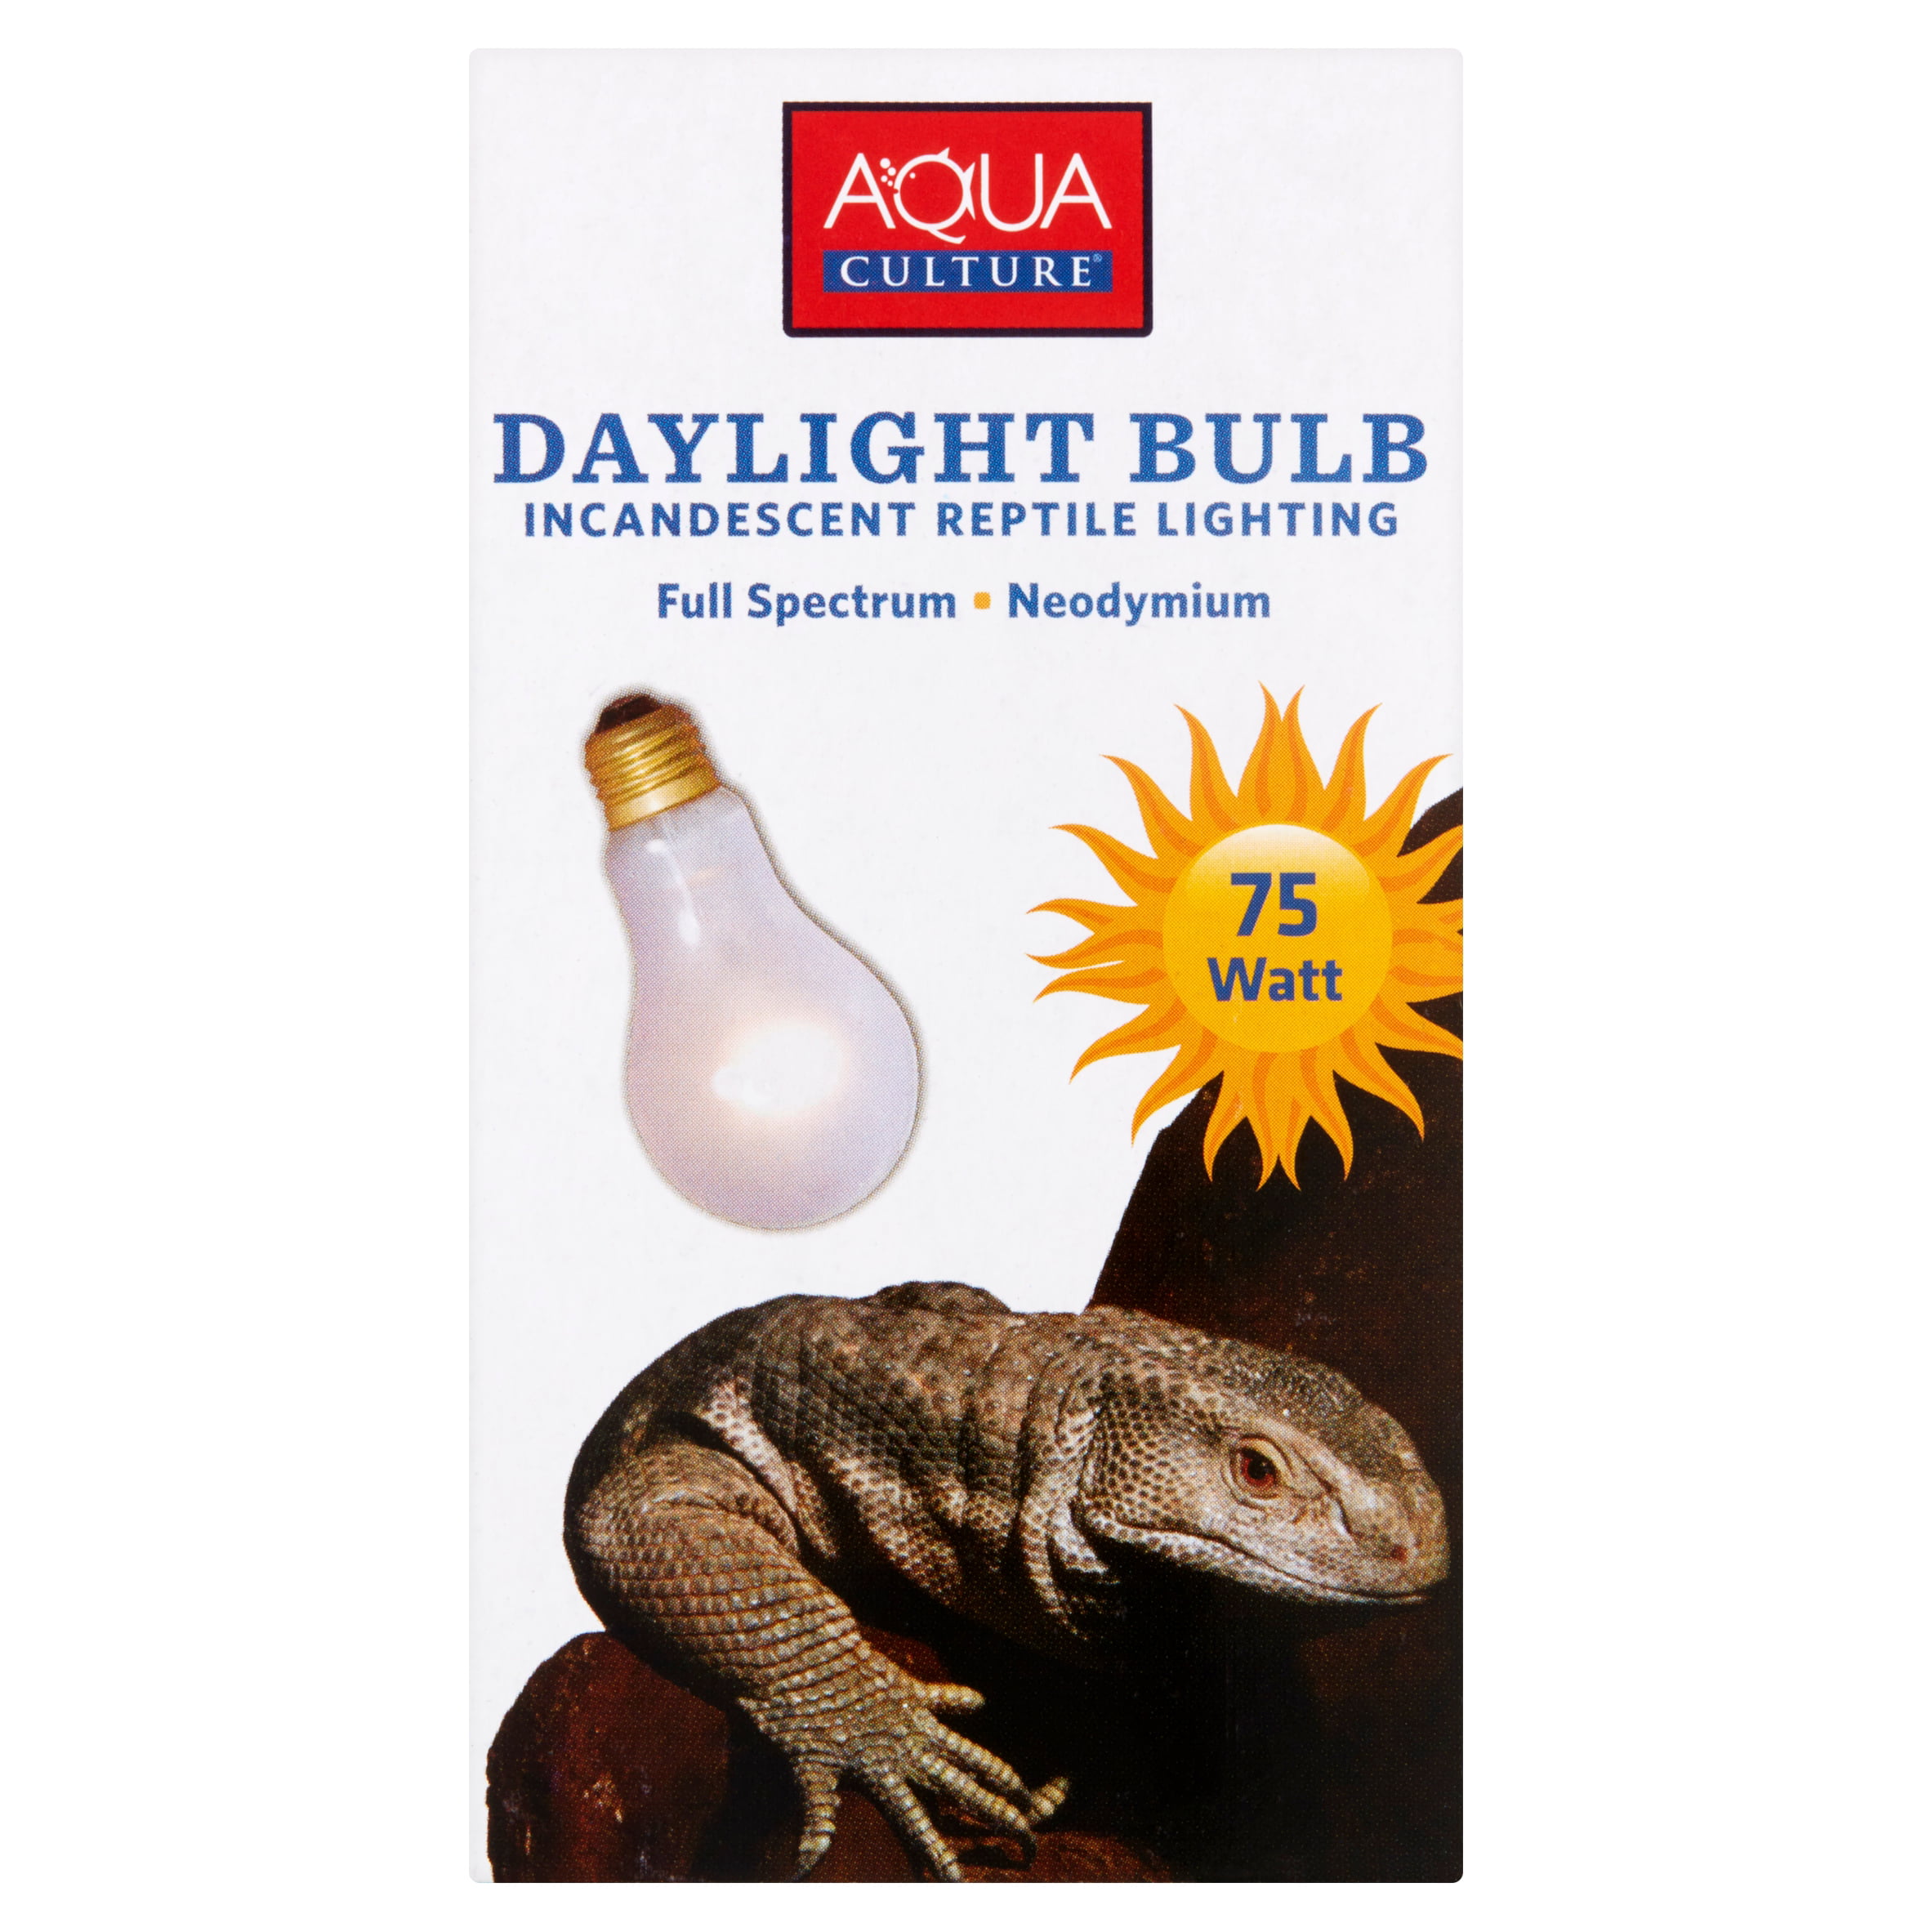 150 watt reptile bulb